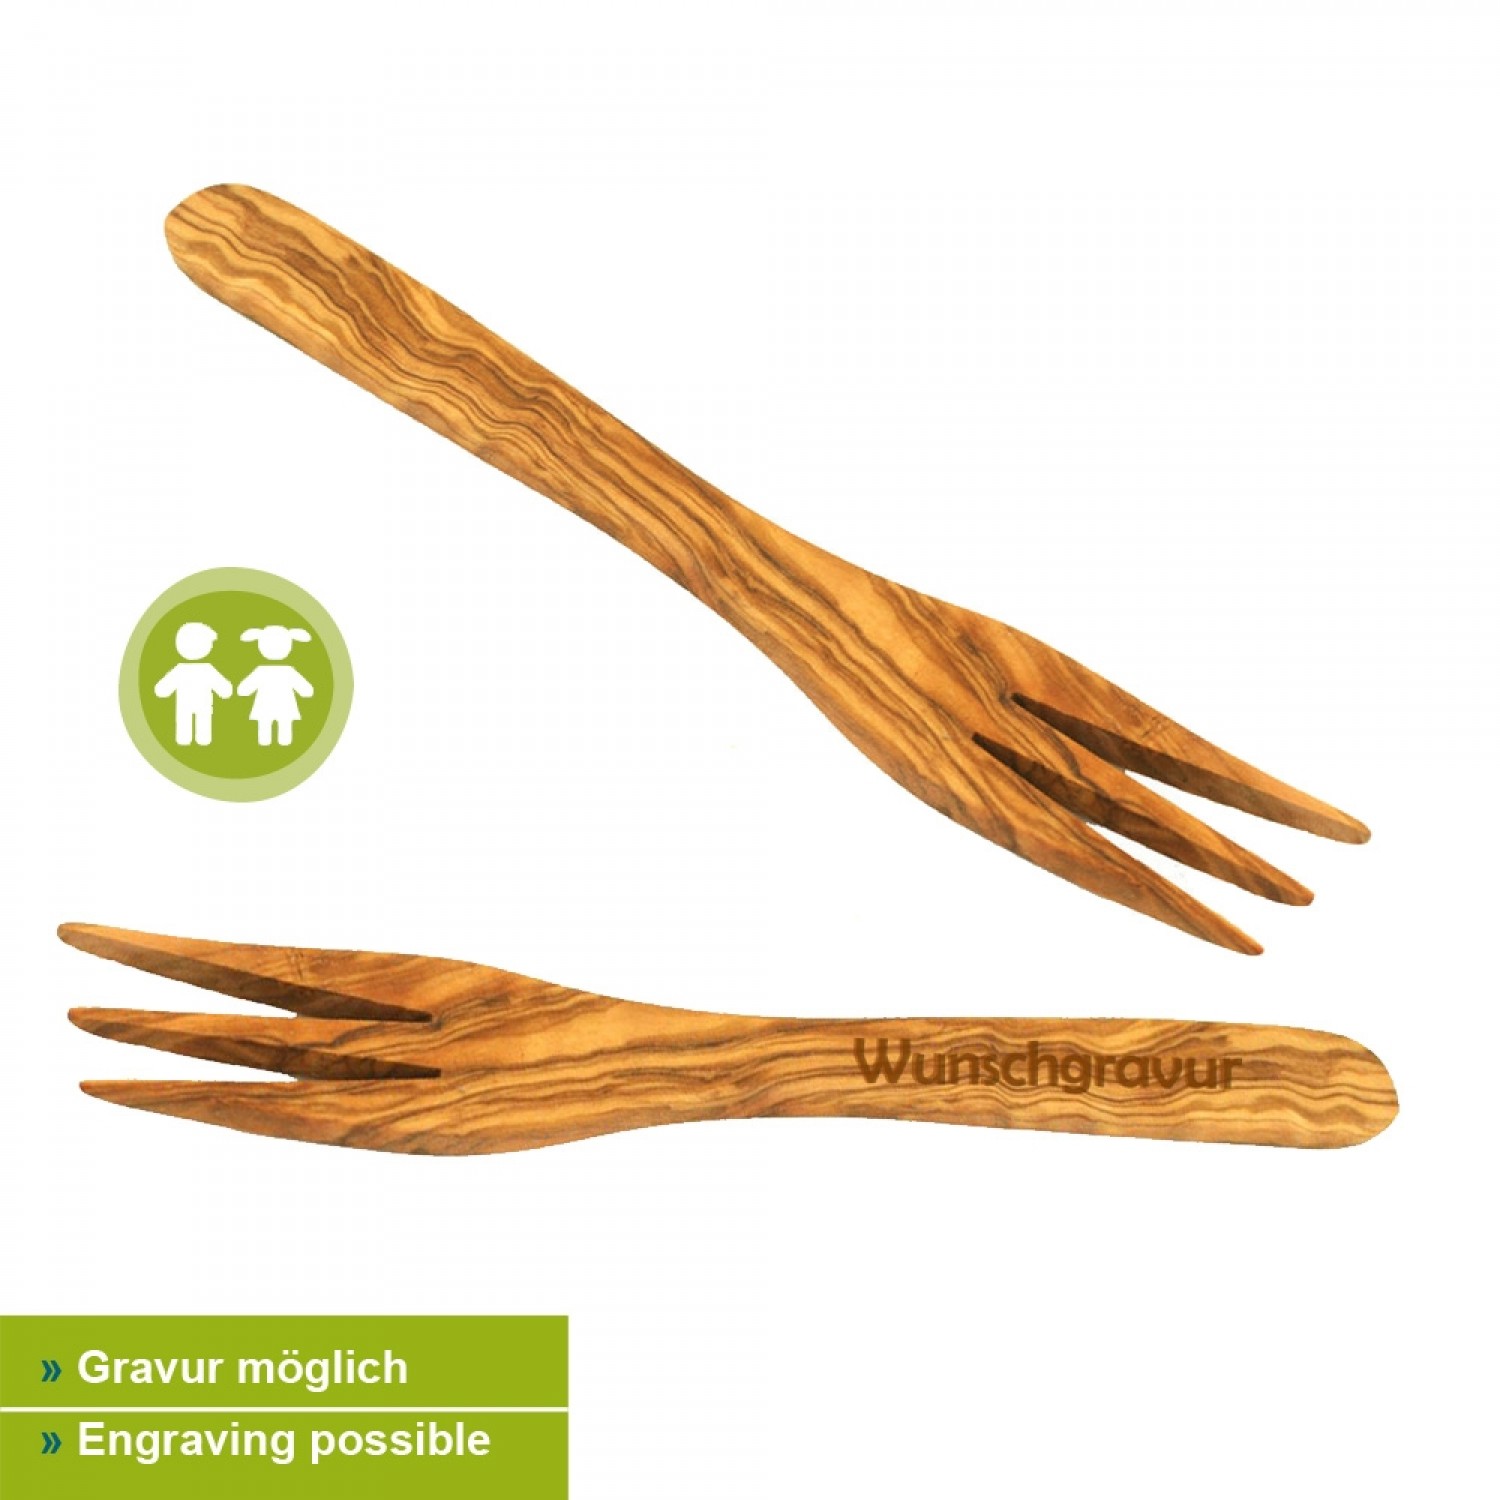 Kids Fork 'Struppi' made of Olive Wood » D.O.M.